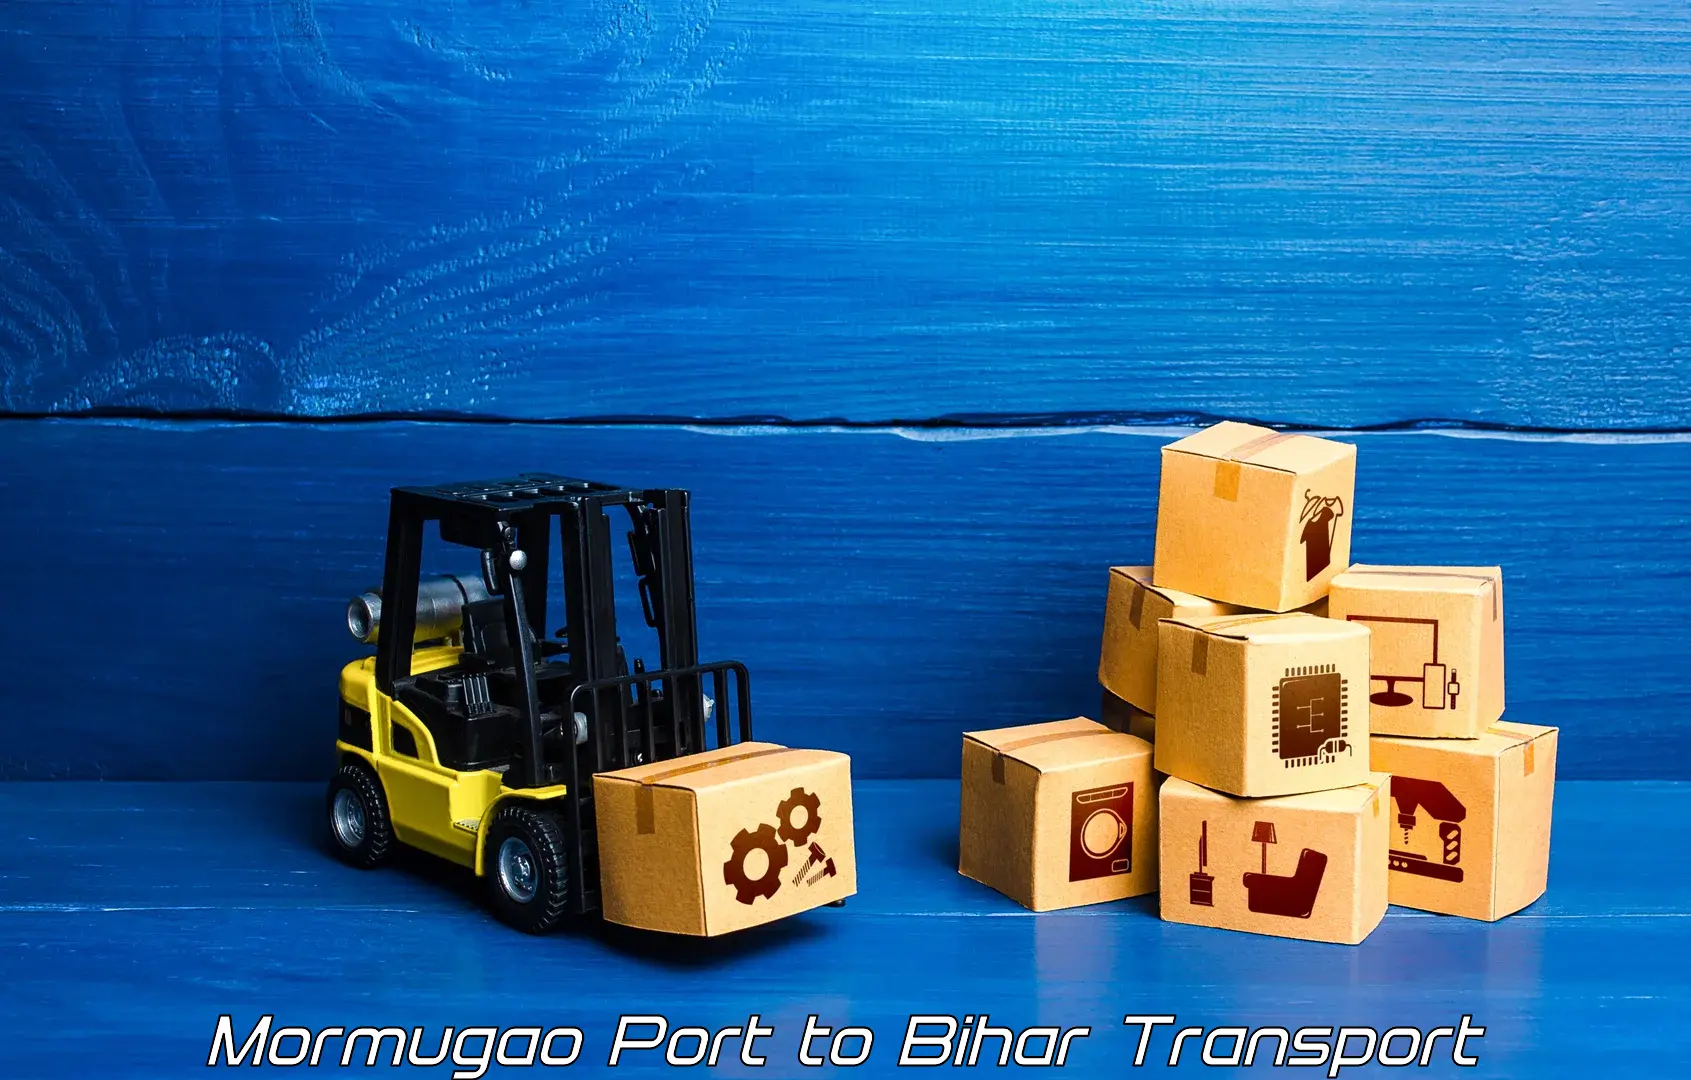 Vehicle transport services Mormugao Port to Imamganj